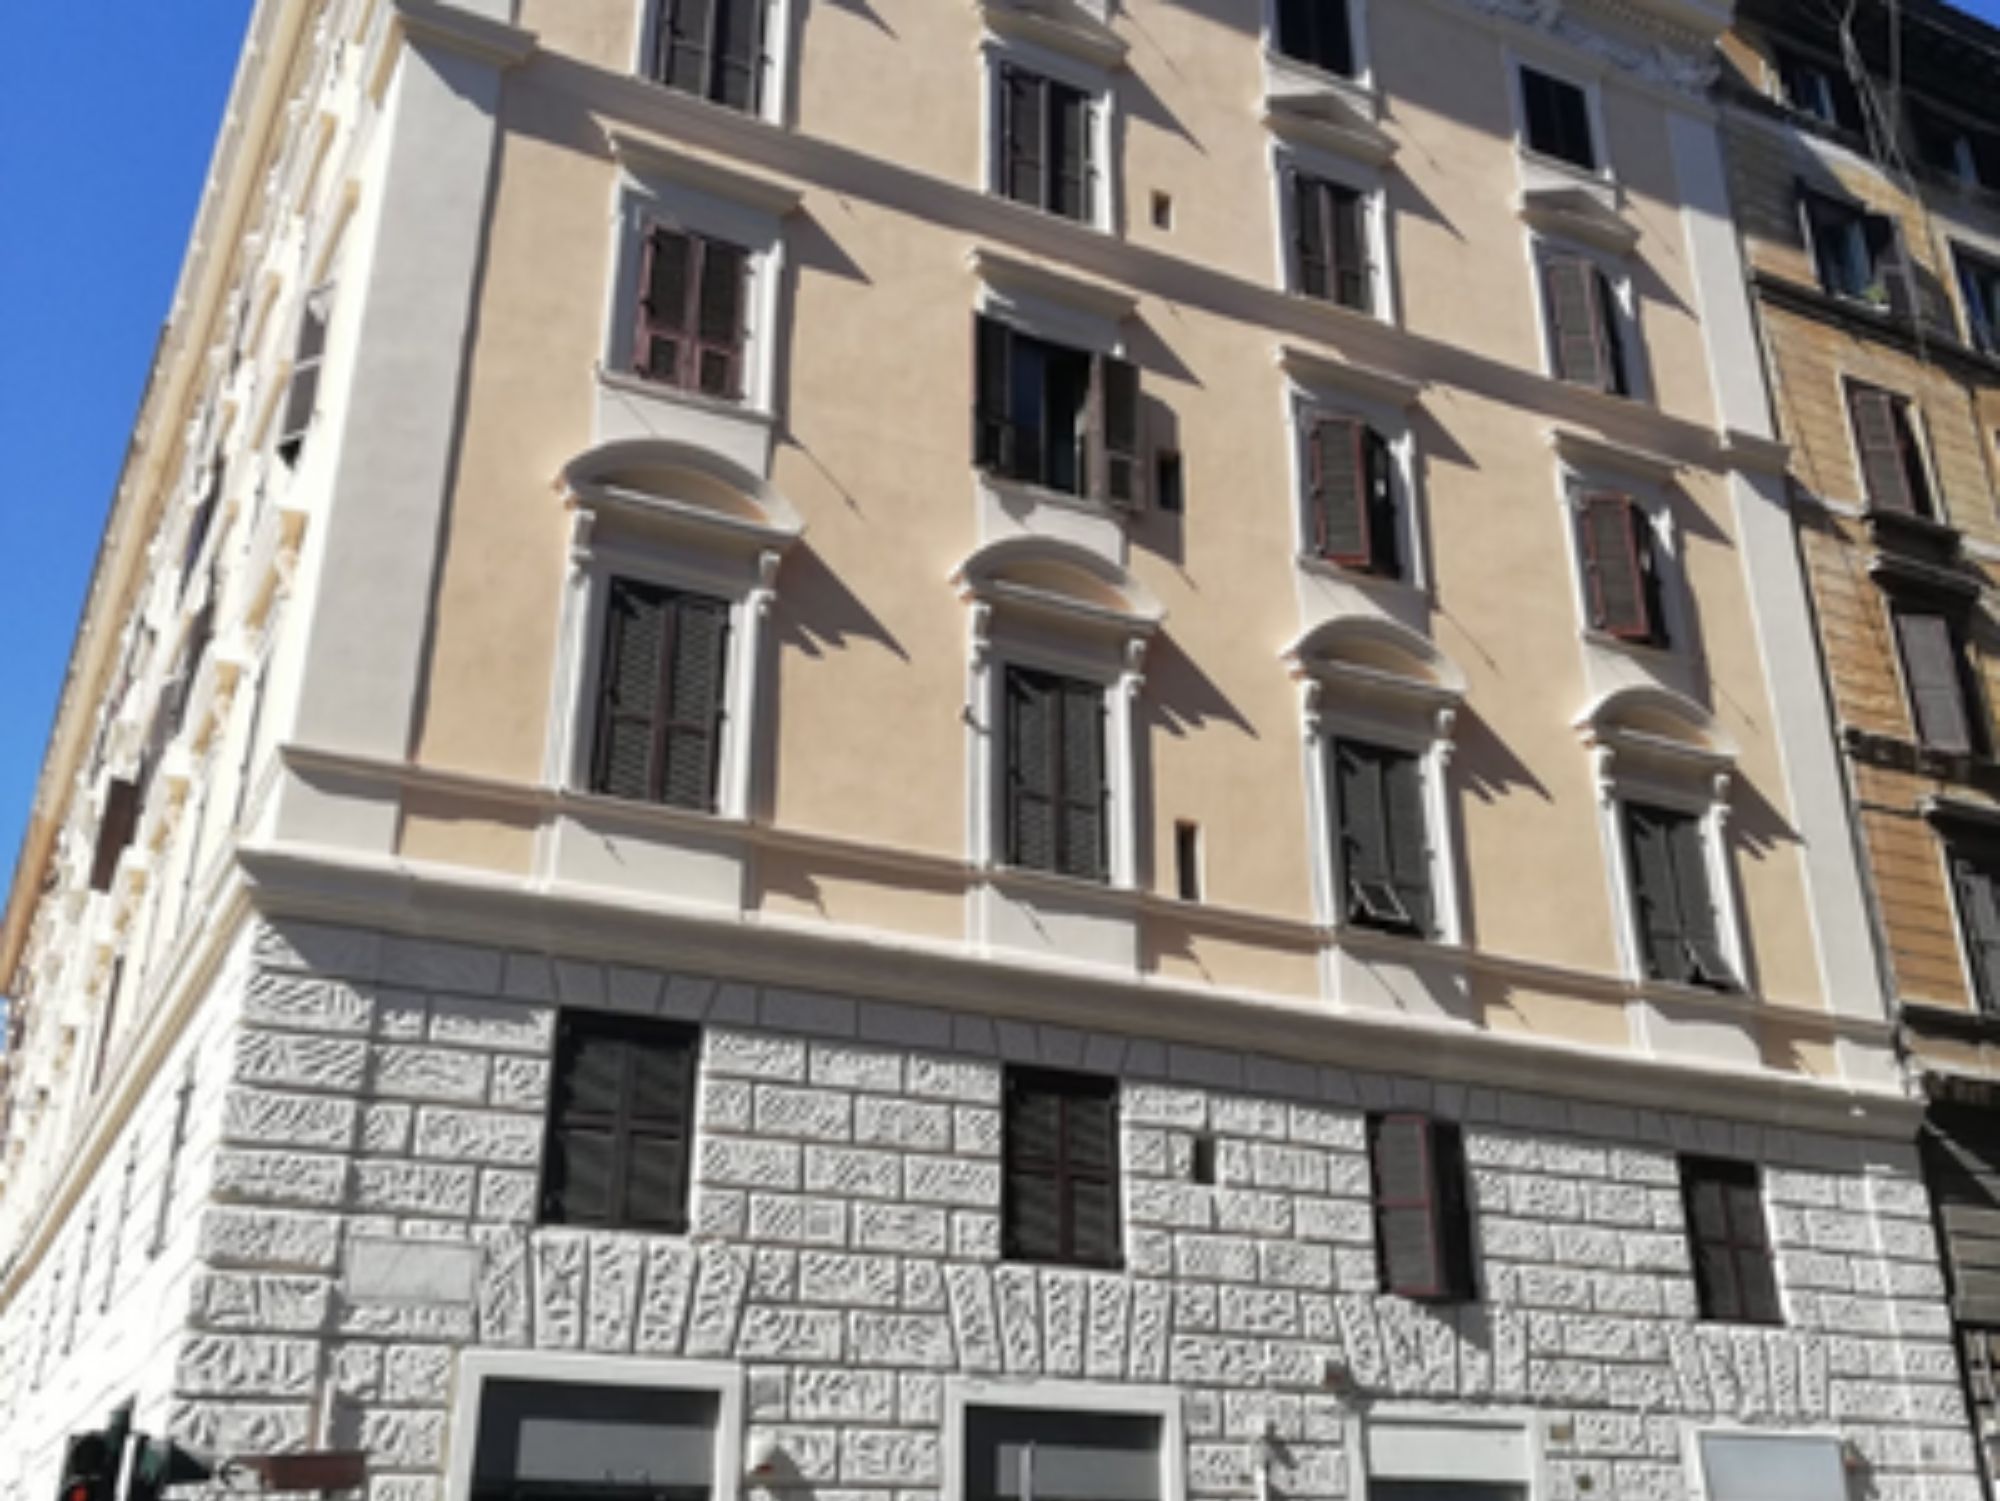 Condominio in Via Mamiani, Roma - Intervento di miglioramento sismico e di contenimento energetico